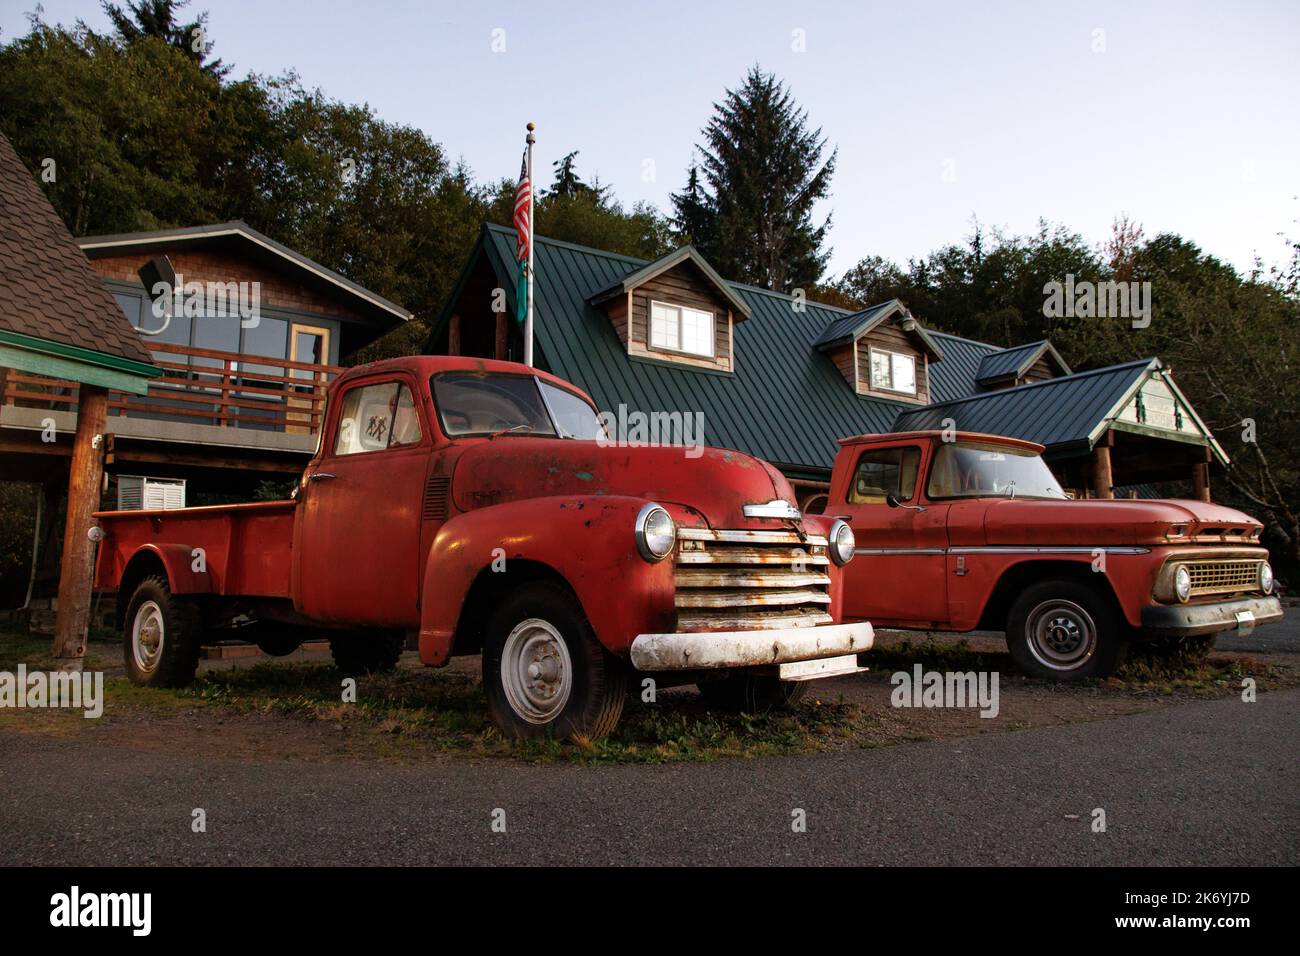 Camion rosso arrugginito di Bella da Twilight. Il leggendario camion Bella's di fronte al centro visitatori di Forks a Washington Foto Stock